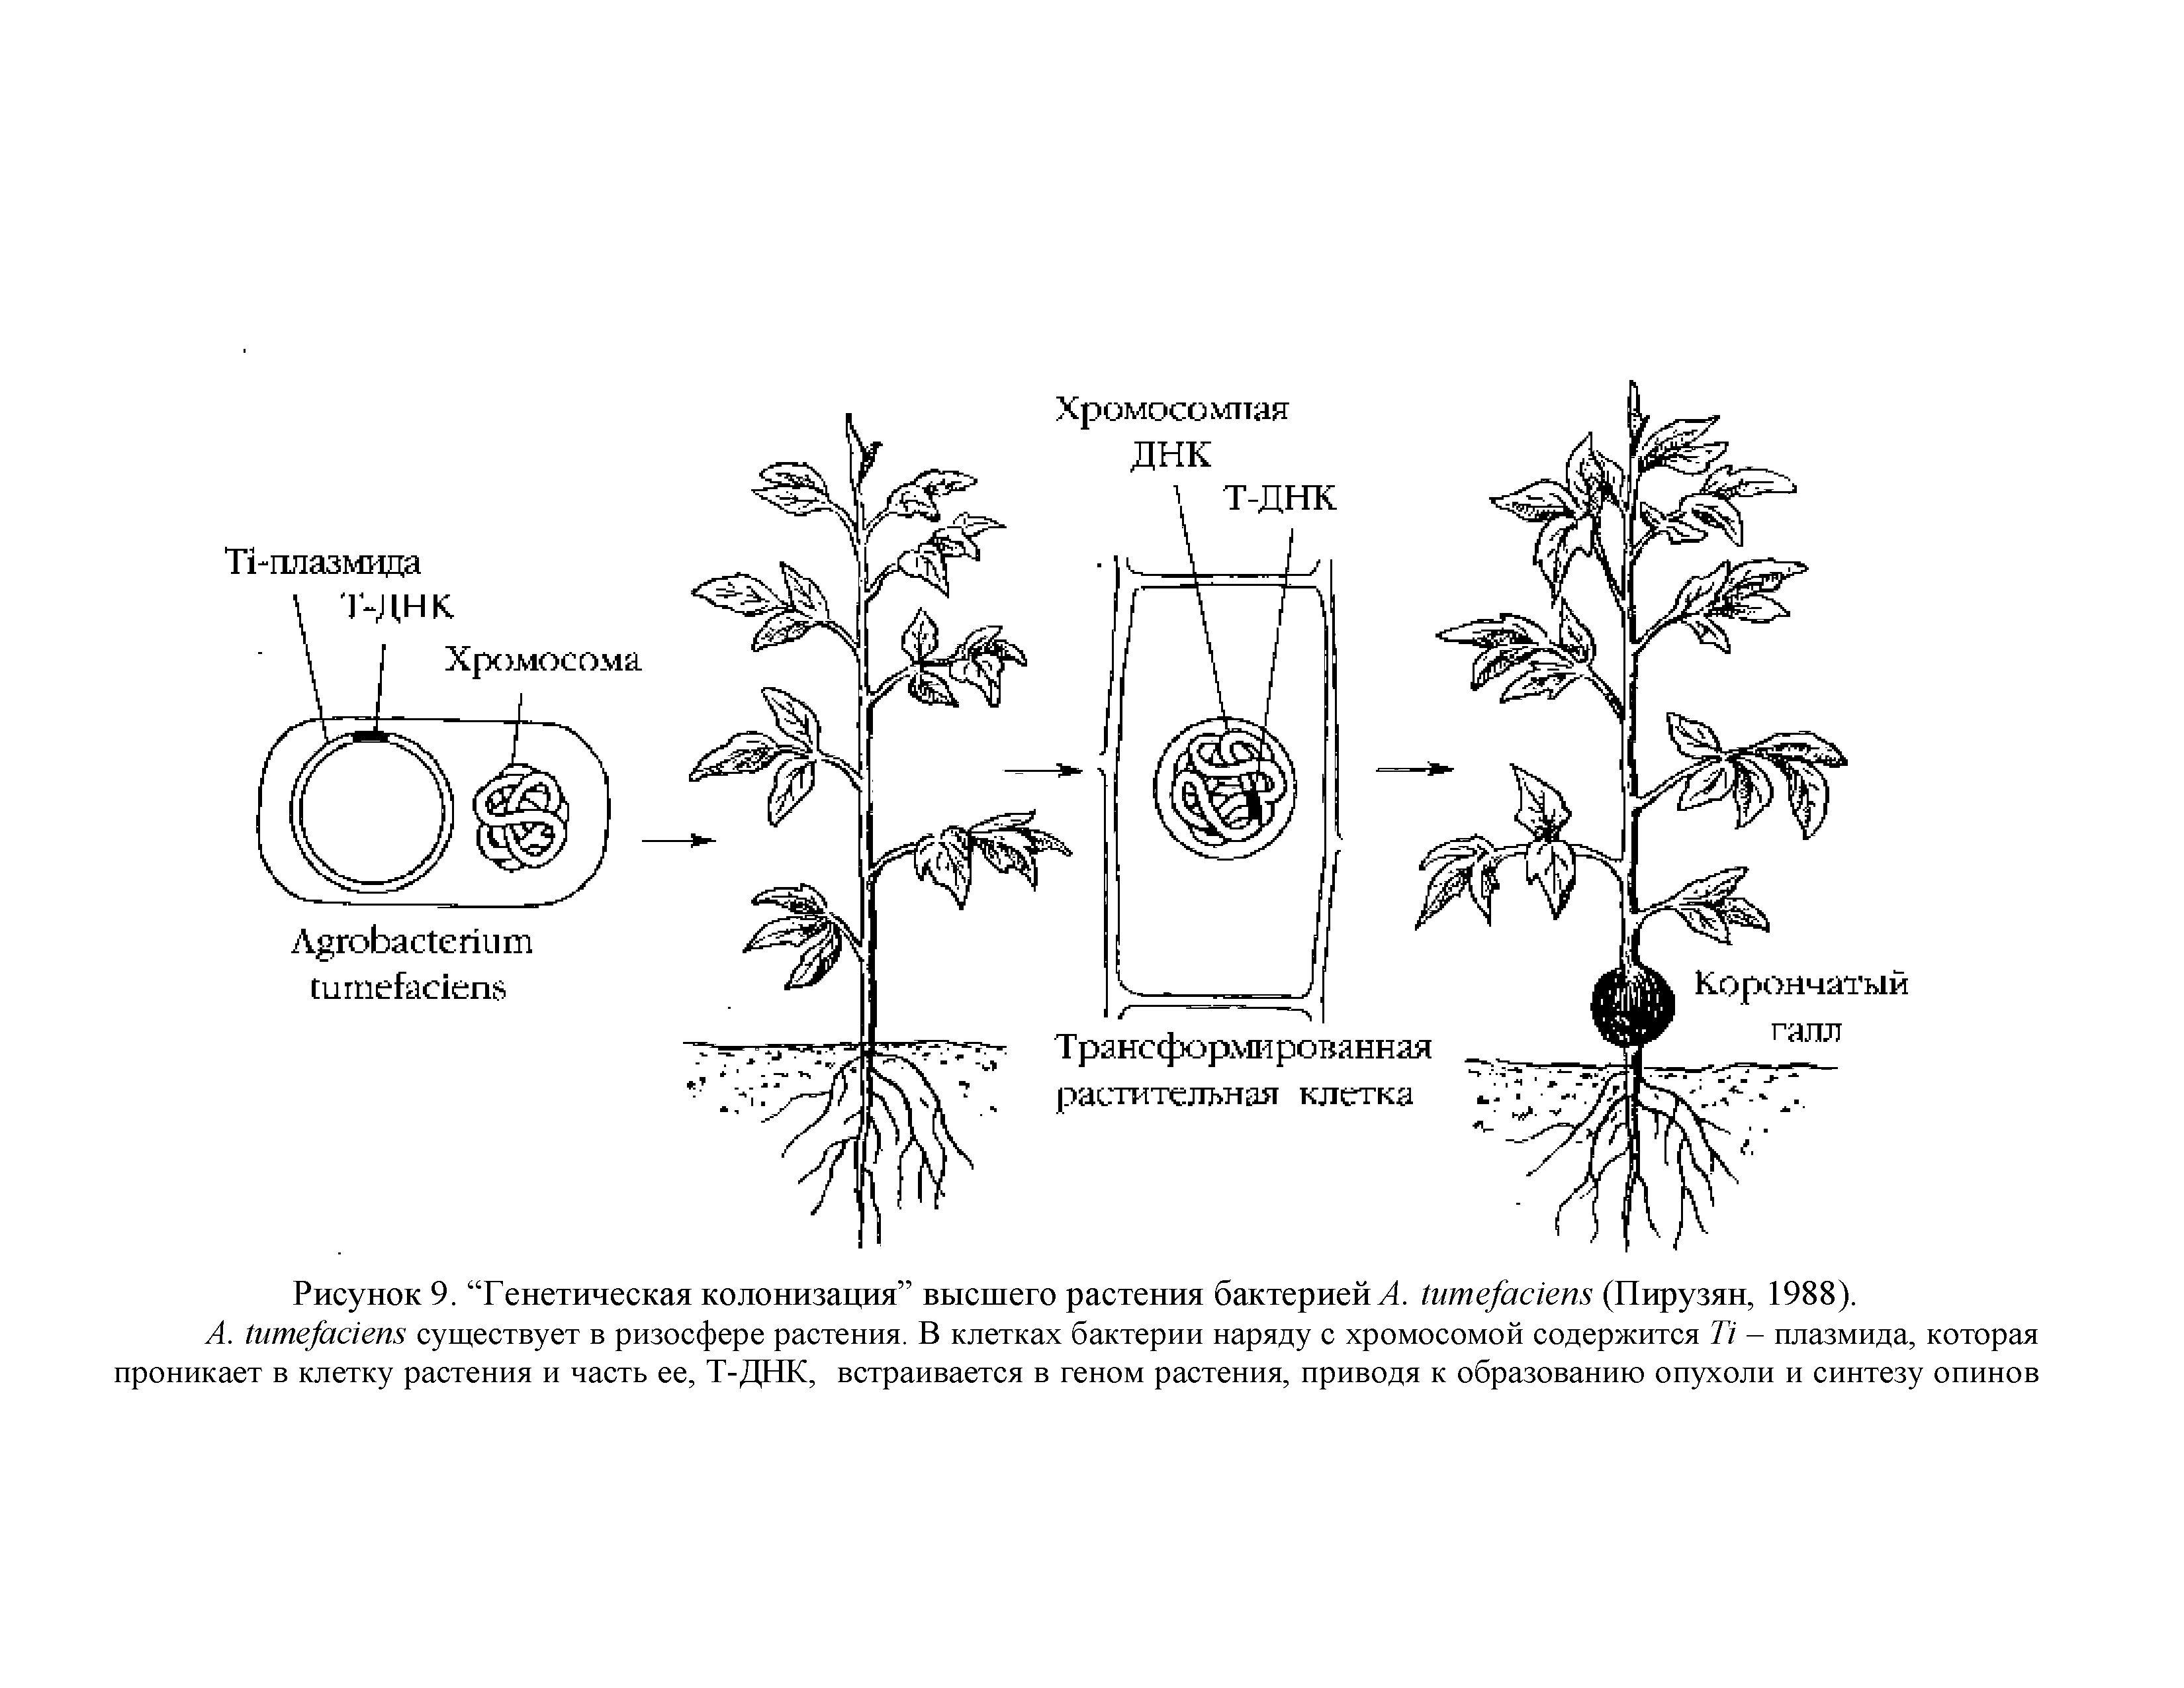 Рисунок 9. Генетическая колонизация высшего растения бактерией Л. 1ите]ас1еп8 (Пирузян, 1988).